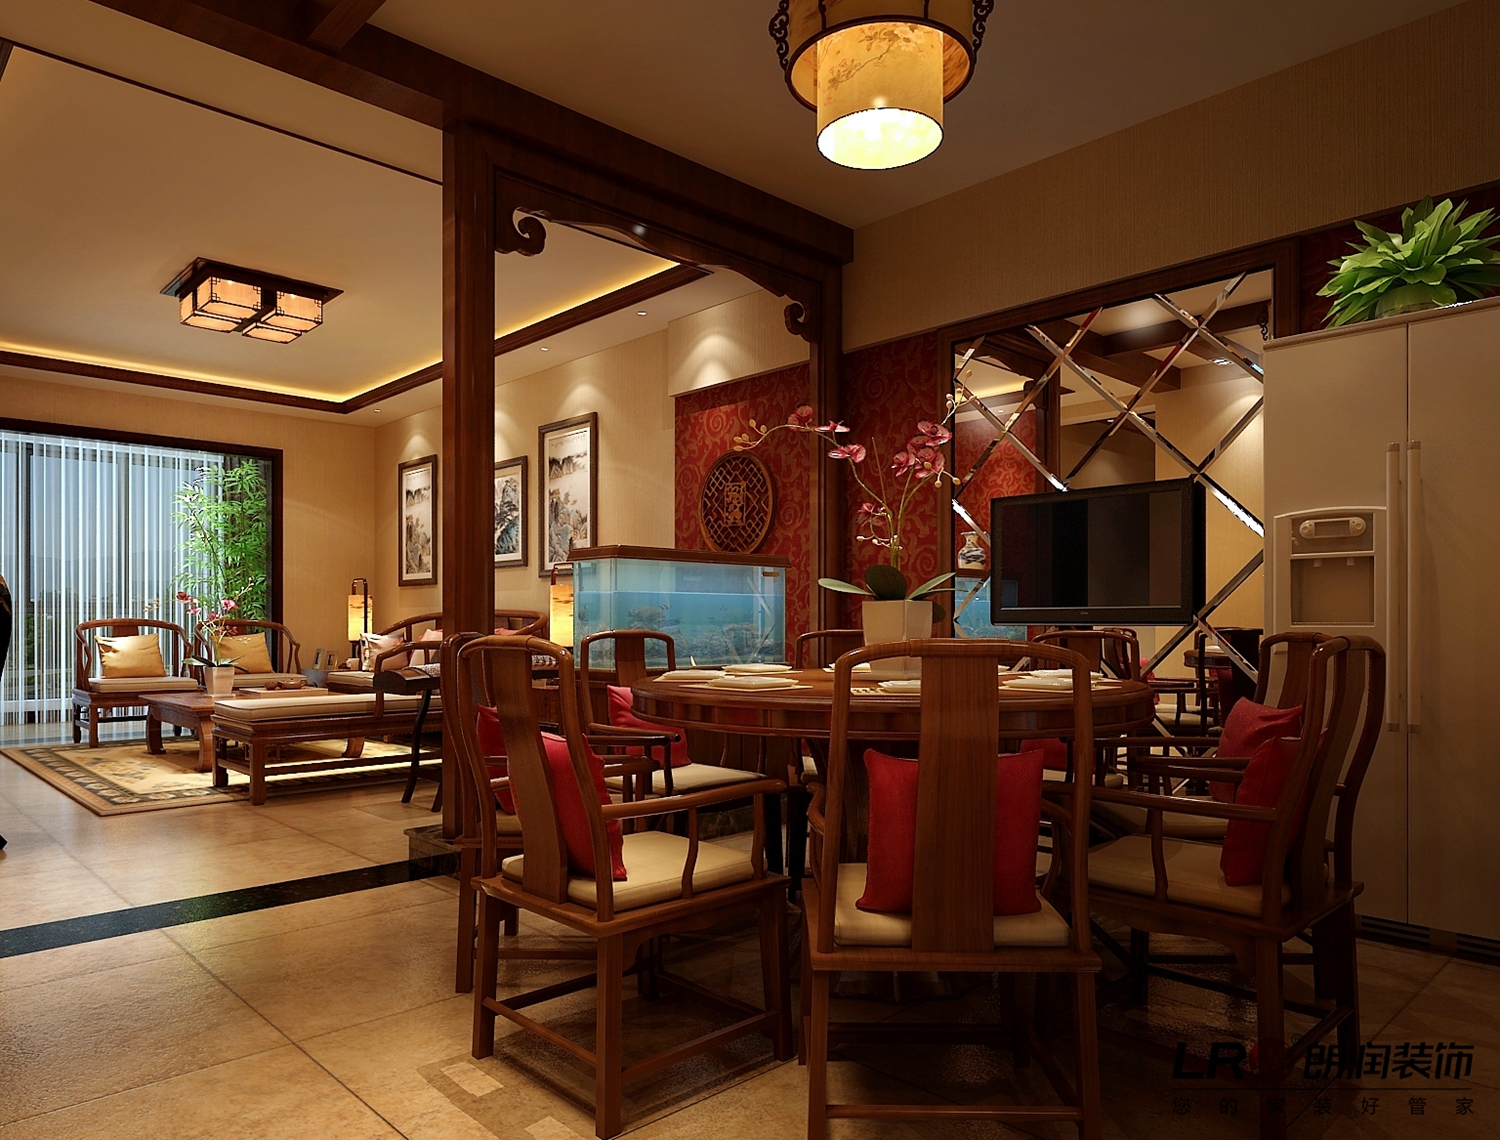 中式 古色古香 静谧 四居 餐厅图片来自用户5156624388在160平纯中式古香古色静谧空间的分享